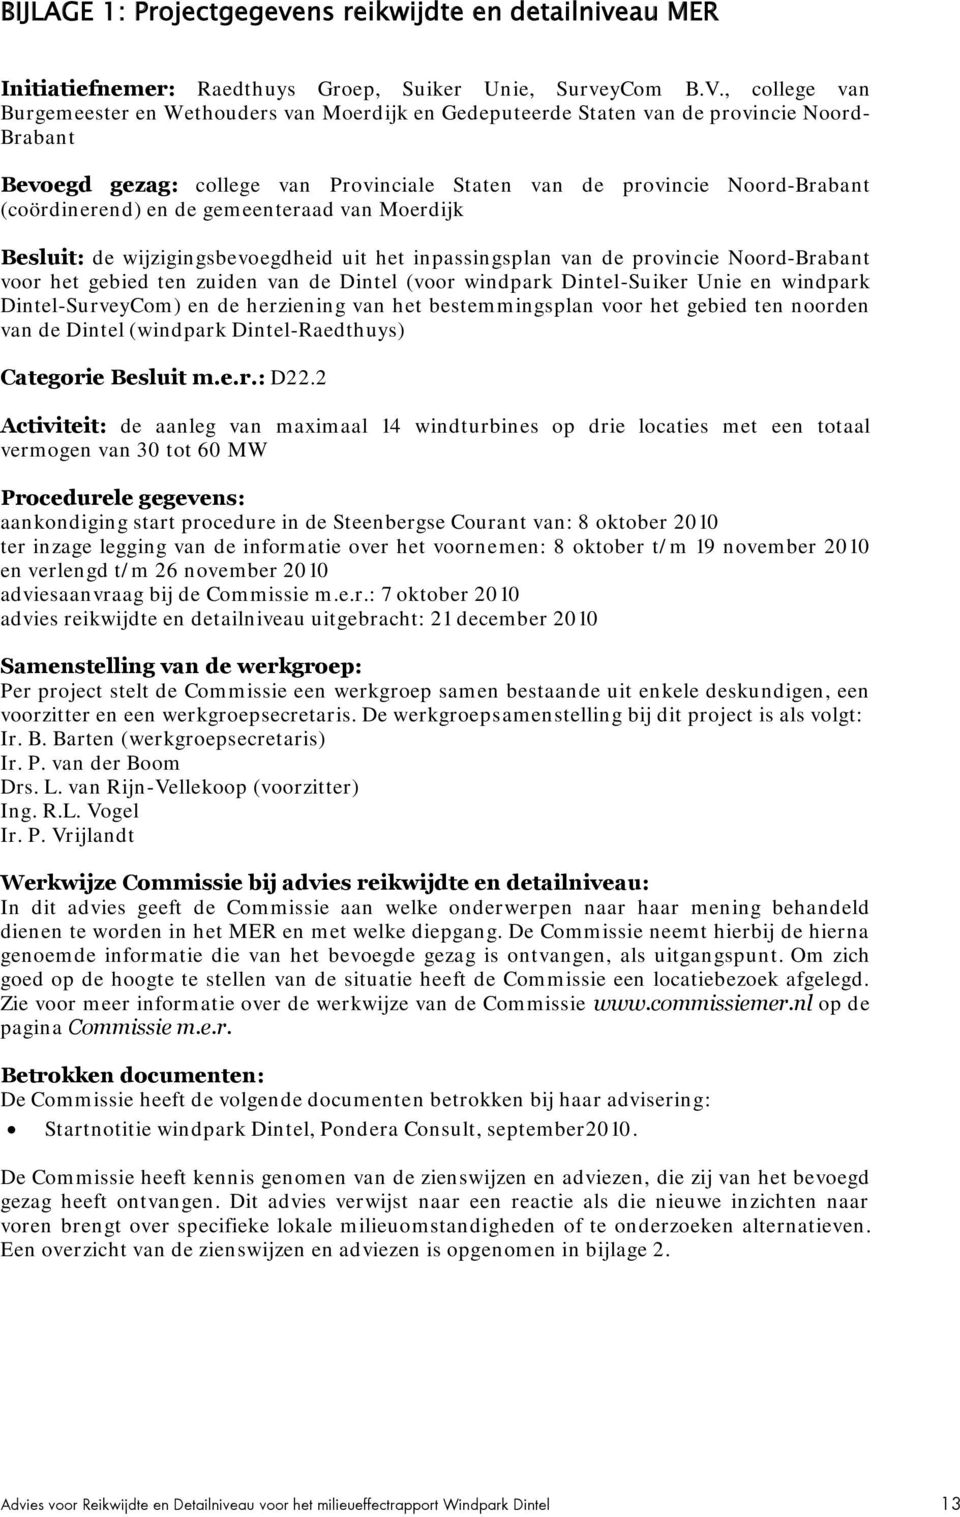 (coördinerend) en de gemeenteraad van Moerdijk Besluit: de wijzigingsbevoegdheid uit het inpassingsplan van de provincie Noord-Brabant voor het gebied ten zuiden van de Dintel (voor windpark